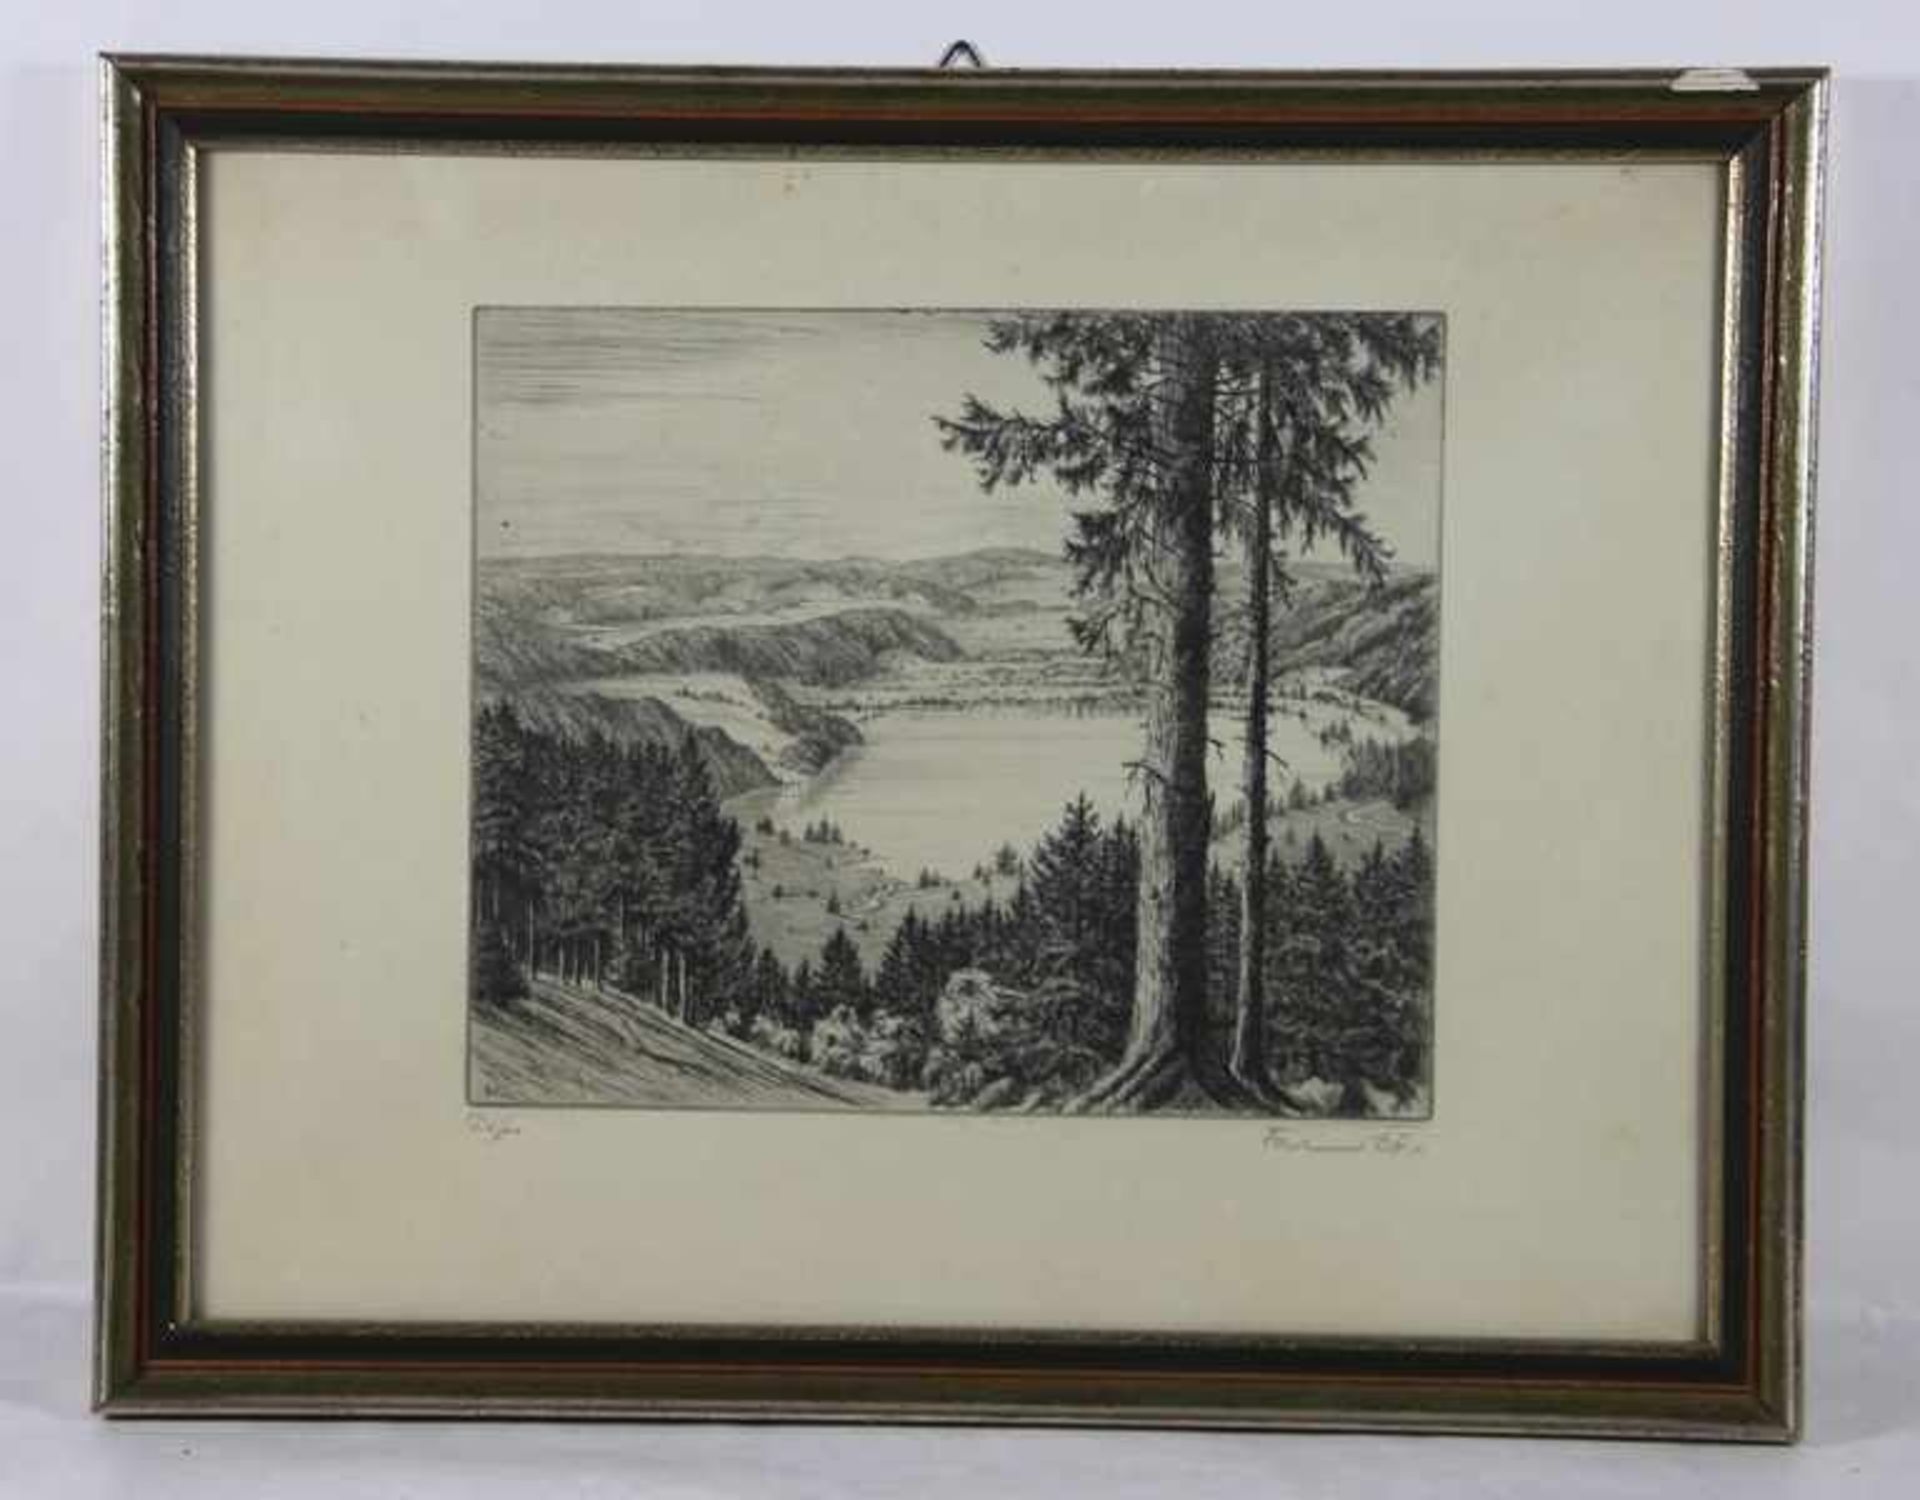 Dörr, Ferdinand1880-1968, Radierung, erhöhter Blick auf einen See in hügeliger Landschaft, im